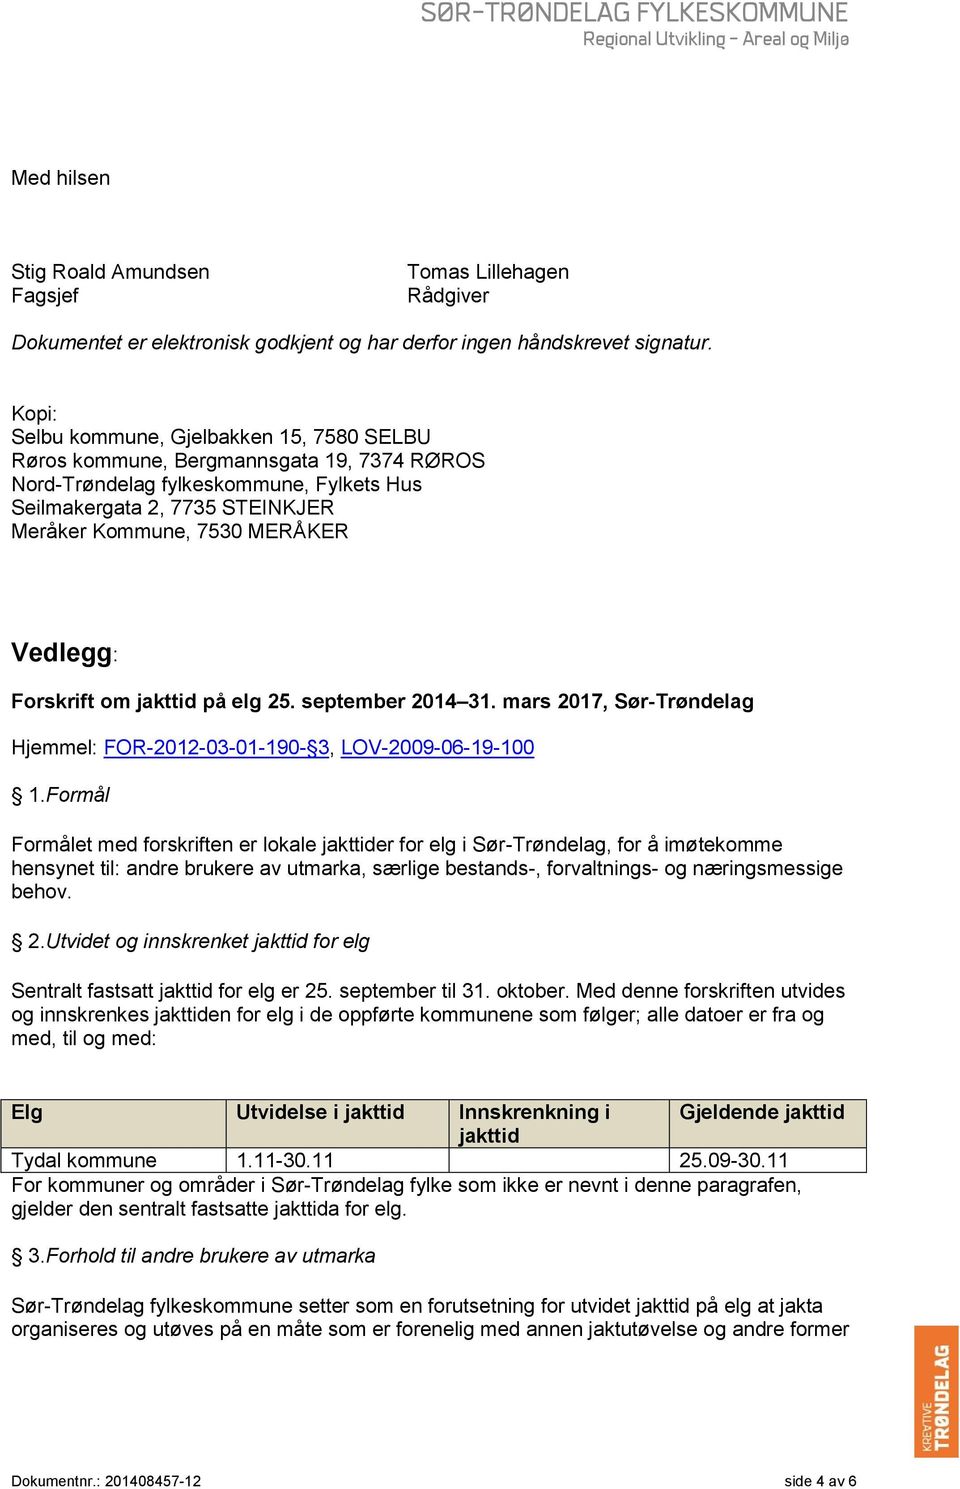 Vedlegg: Forskrift om jakttid på elg 25. september 2014 31. mars 2017, Sør-Trøndelag Hjemmel: FOR-2012-03-01-190- 3, LOV-2009-06-19-100 1.